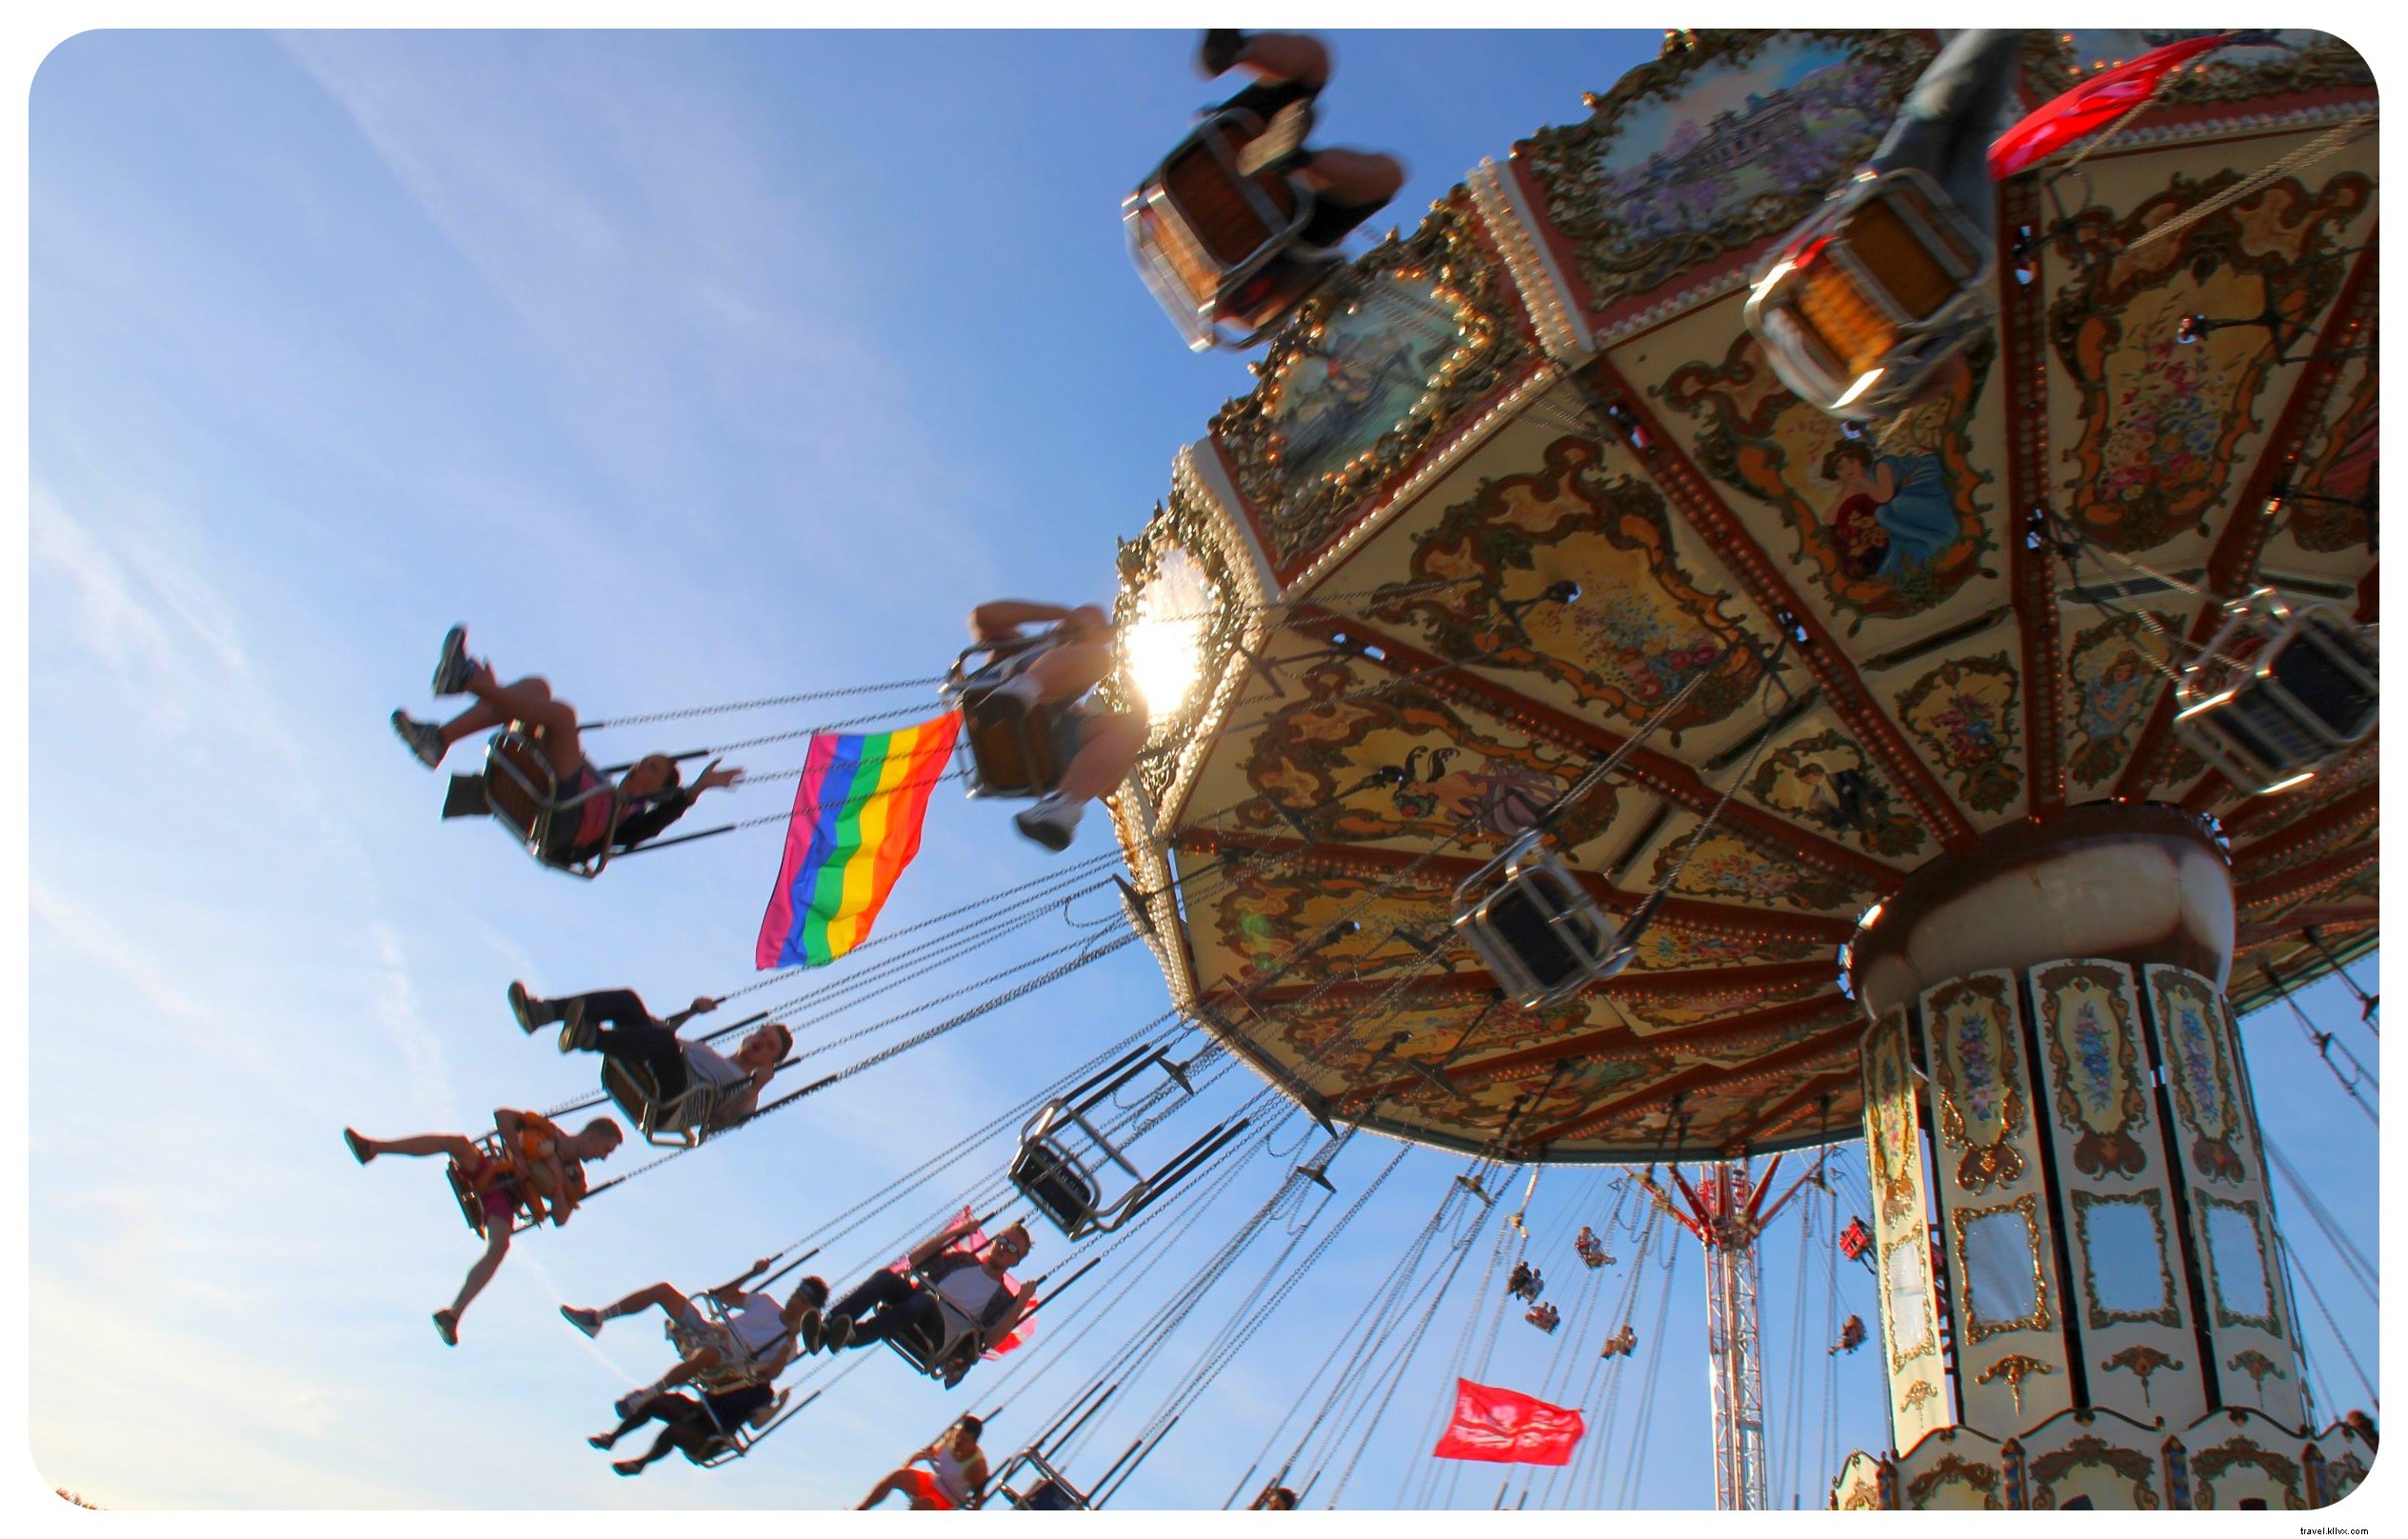 Festival Kebanggaan ke-25 Brighton:Karnaval Keanekaragaman